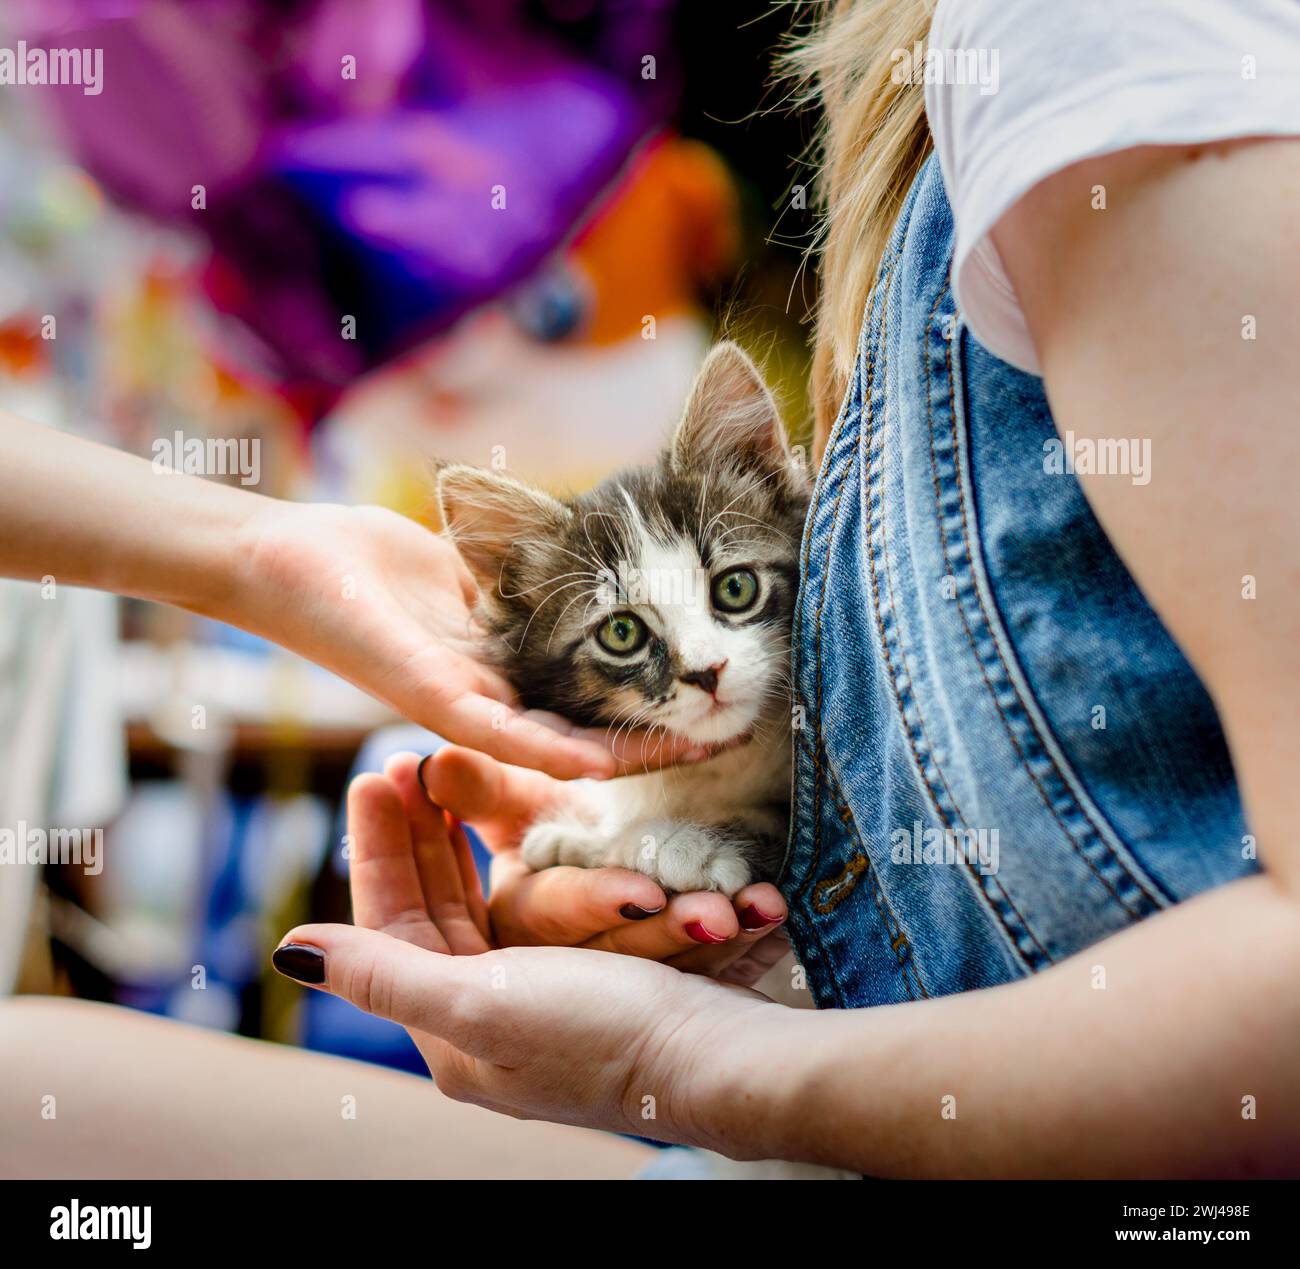 S'occuper des animaux de compagnie la main de l'enfant caresse un petit chaton tabby assis Banque D'Images